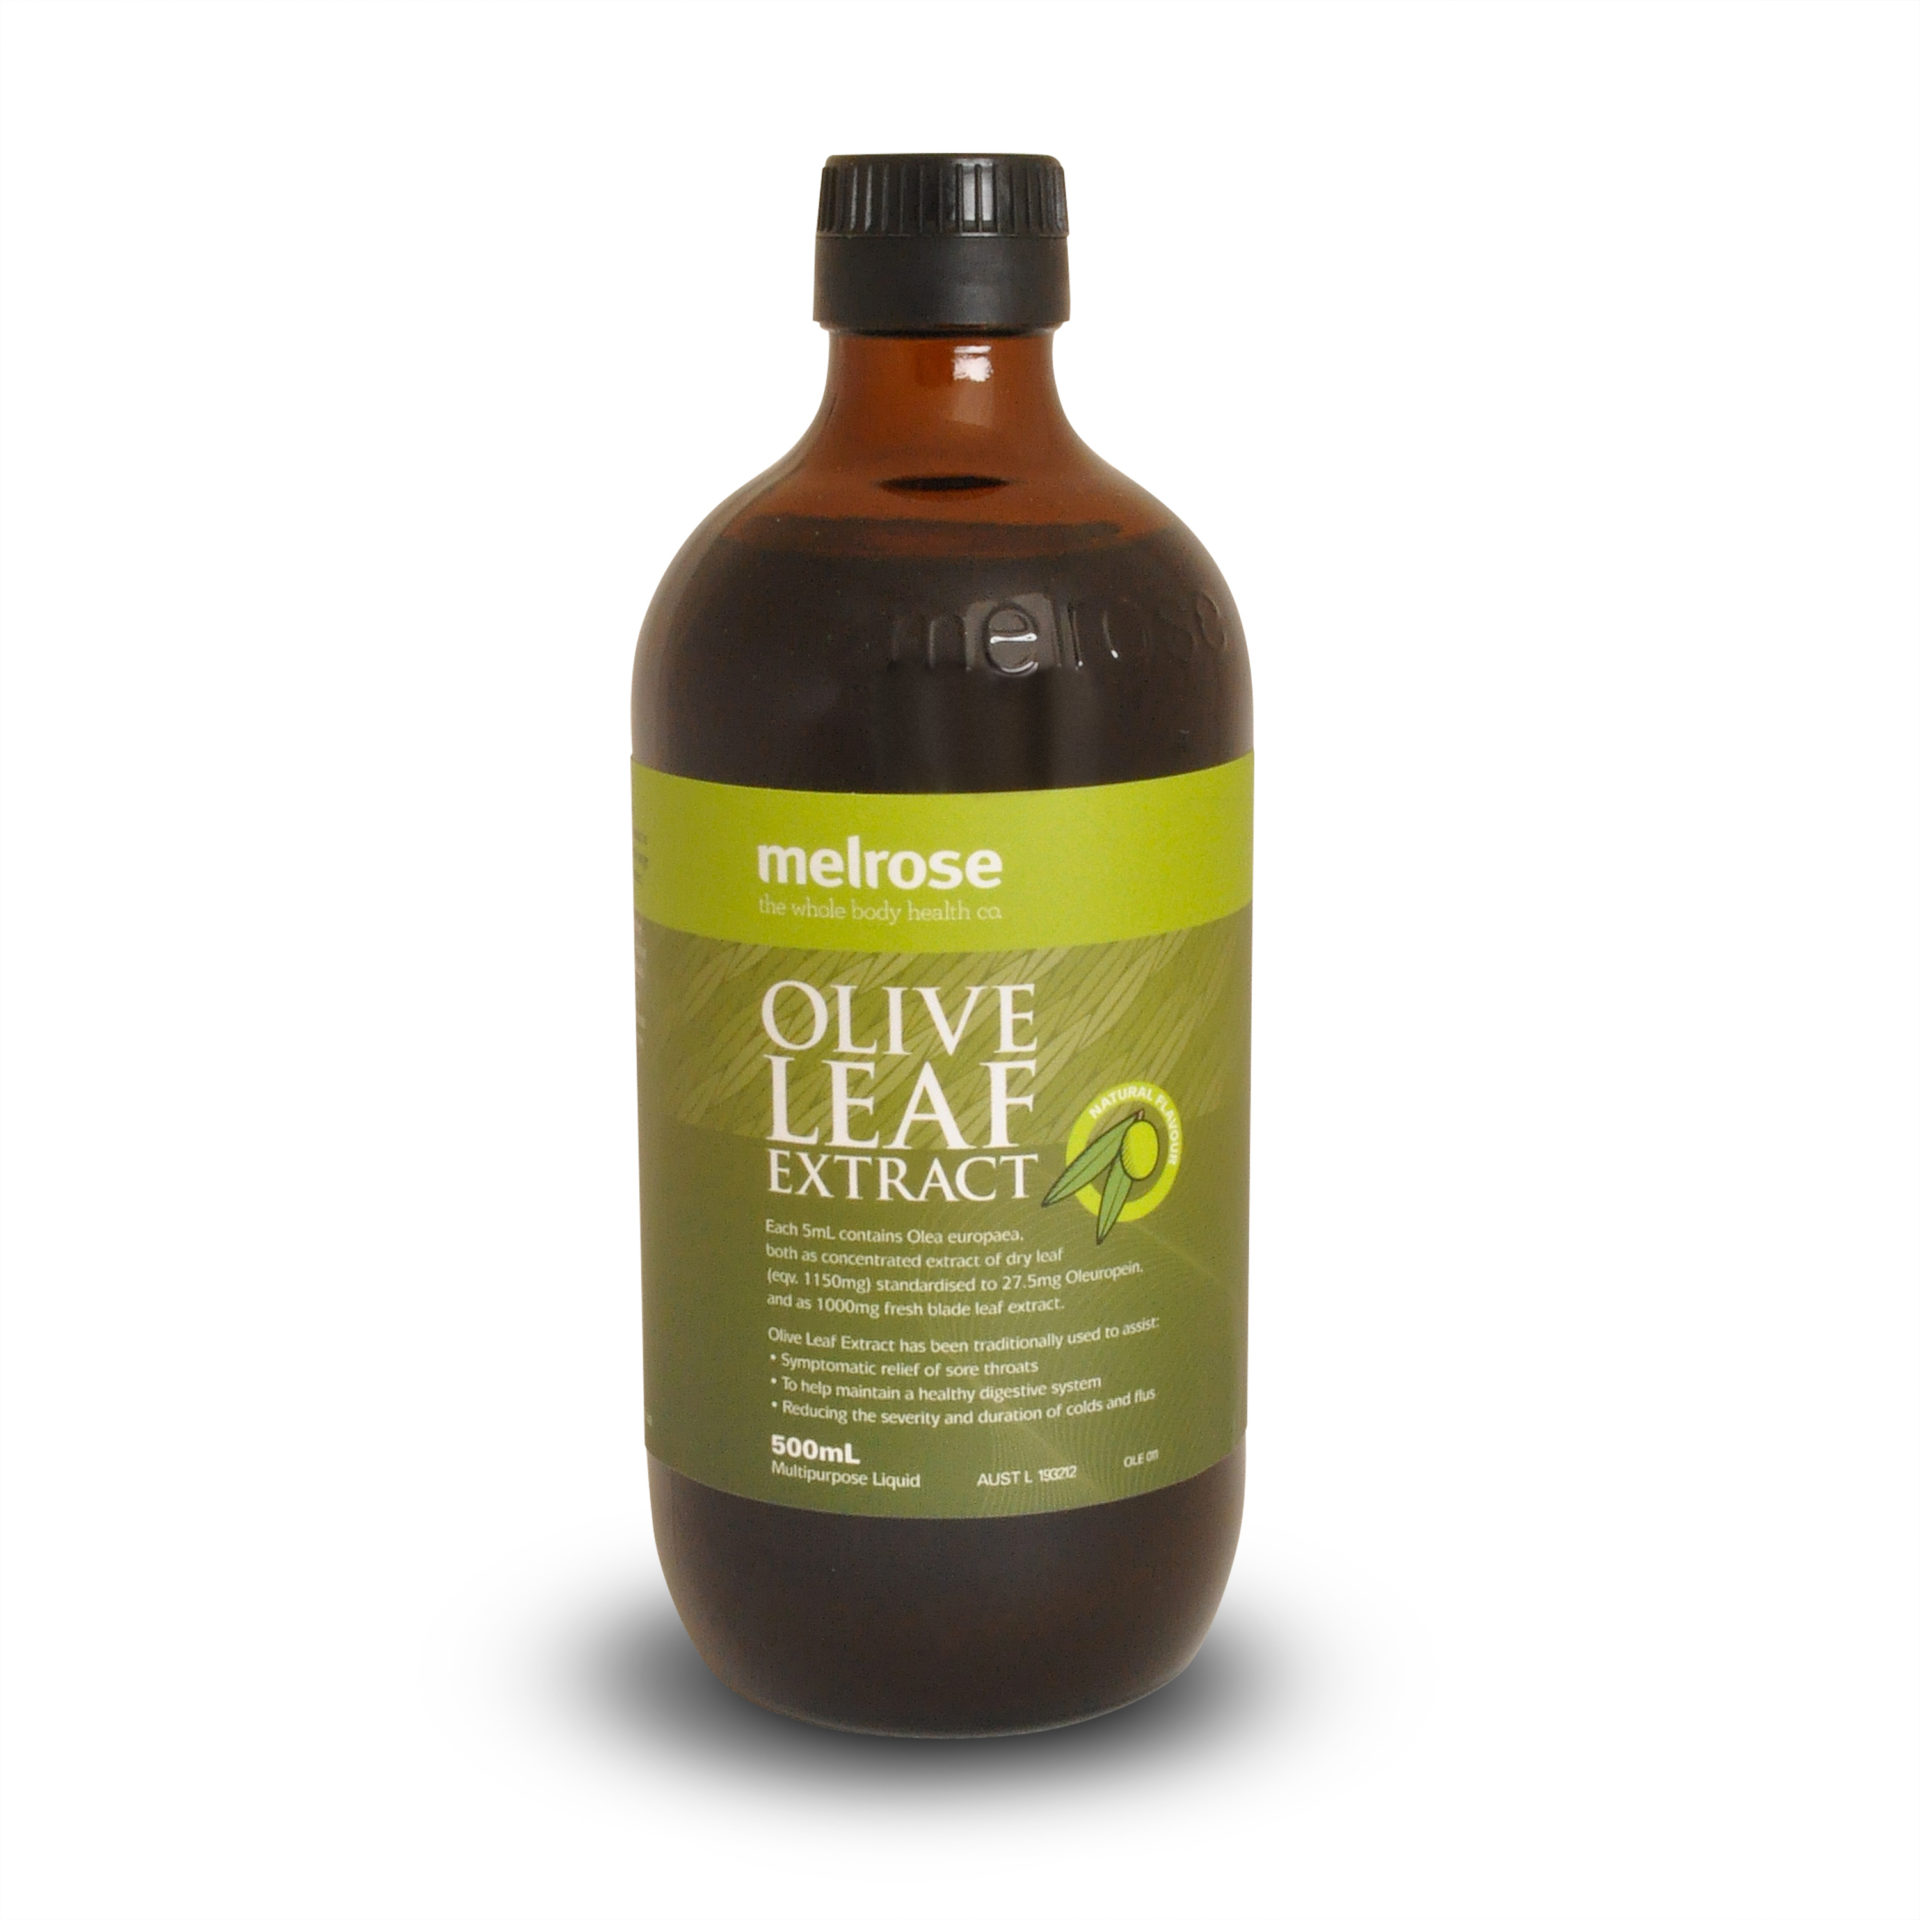 Масло оливковых листьев. Оливе Leaf extract. EGCG экстракт листьев оливы. Olive Leaf Dry extract. Supplement Olive Leaf extract.